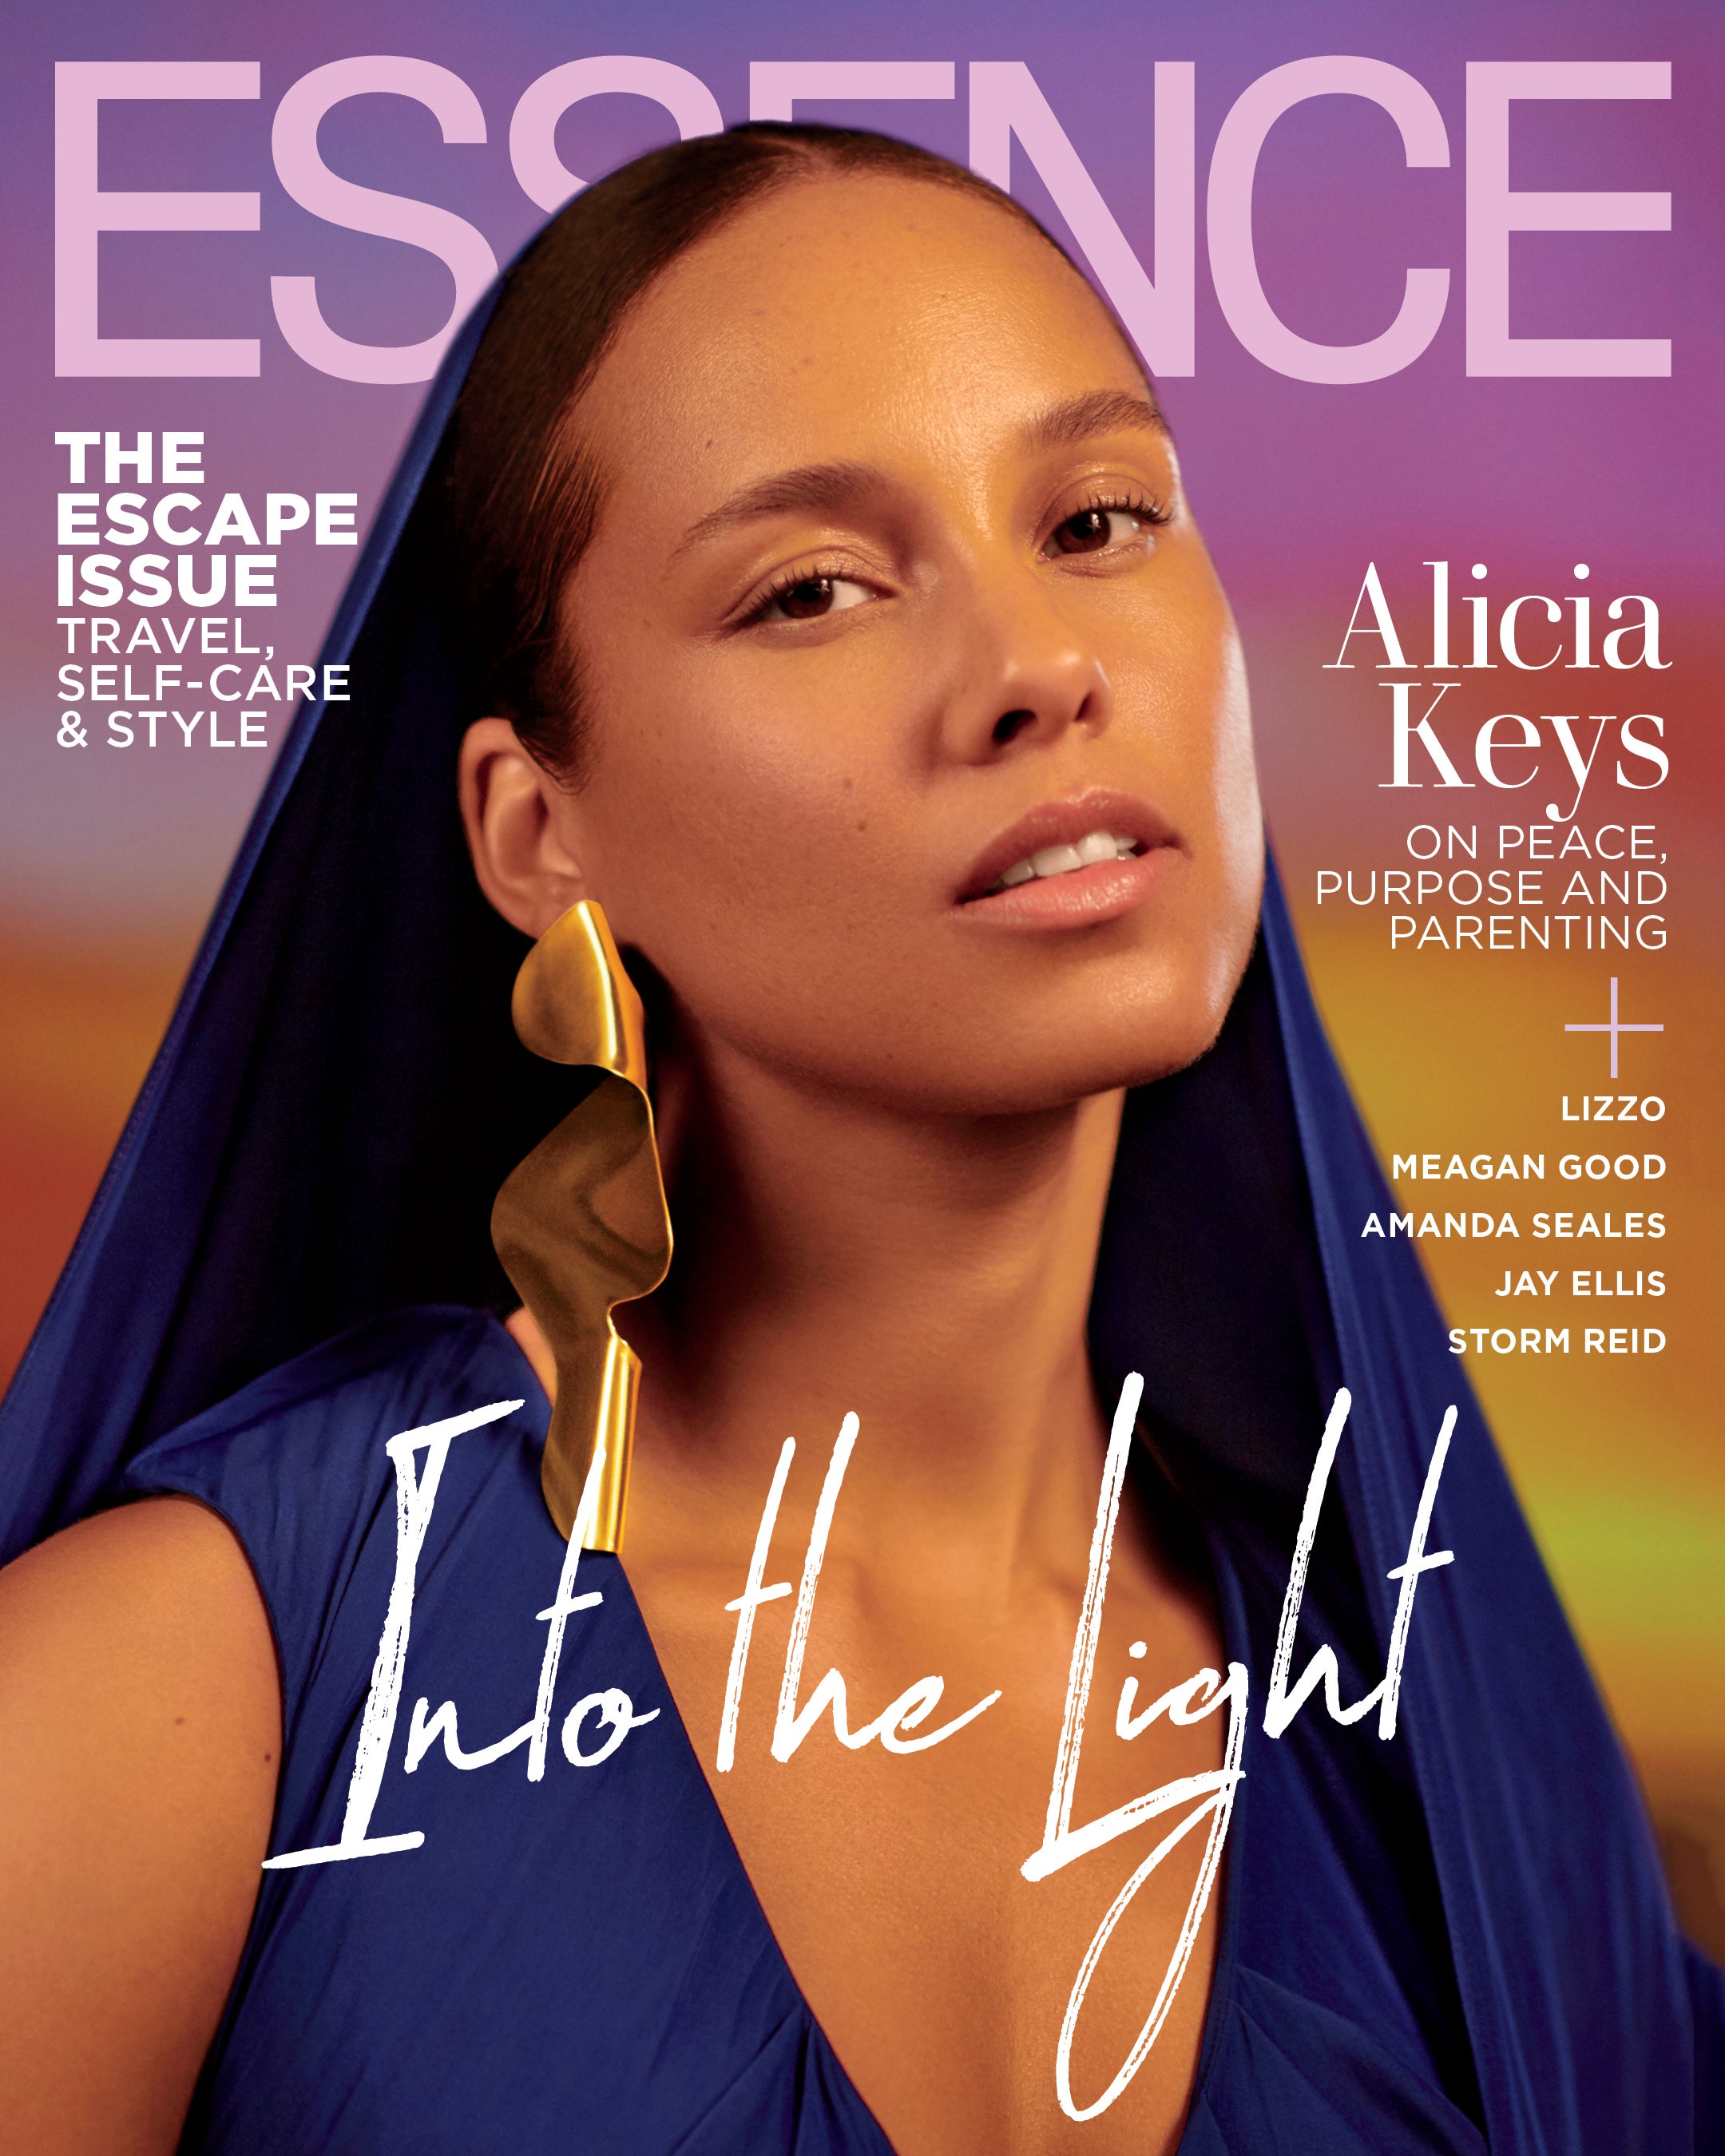 Alicia Keys Steps Into The Light